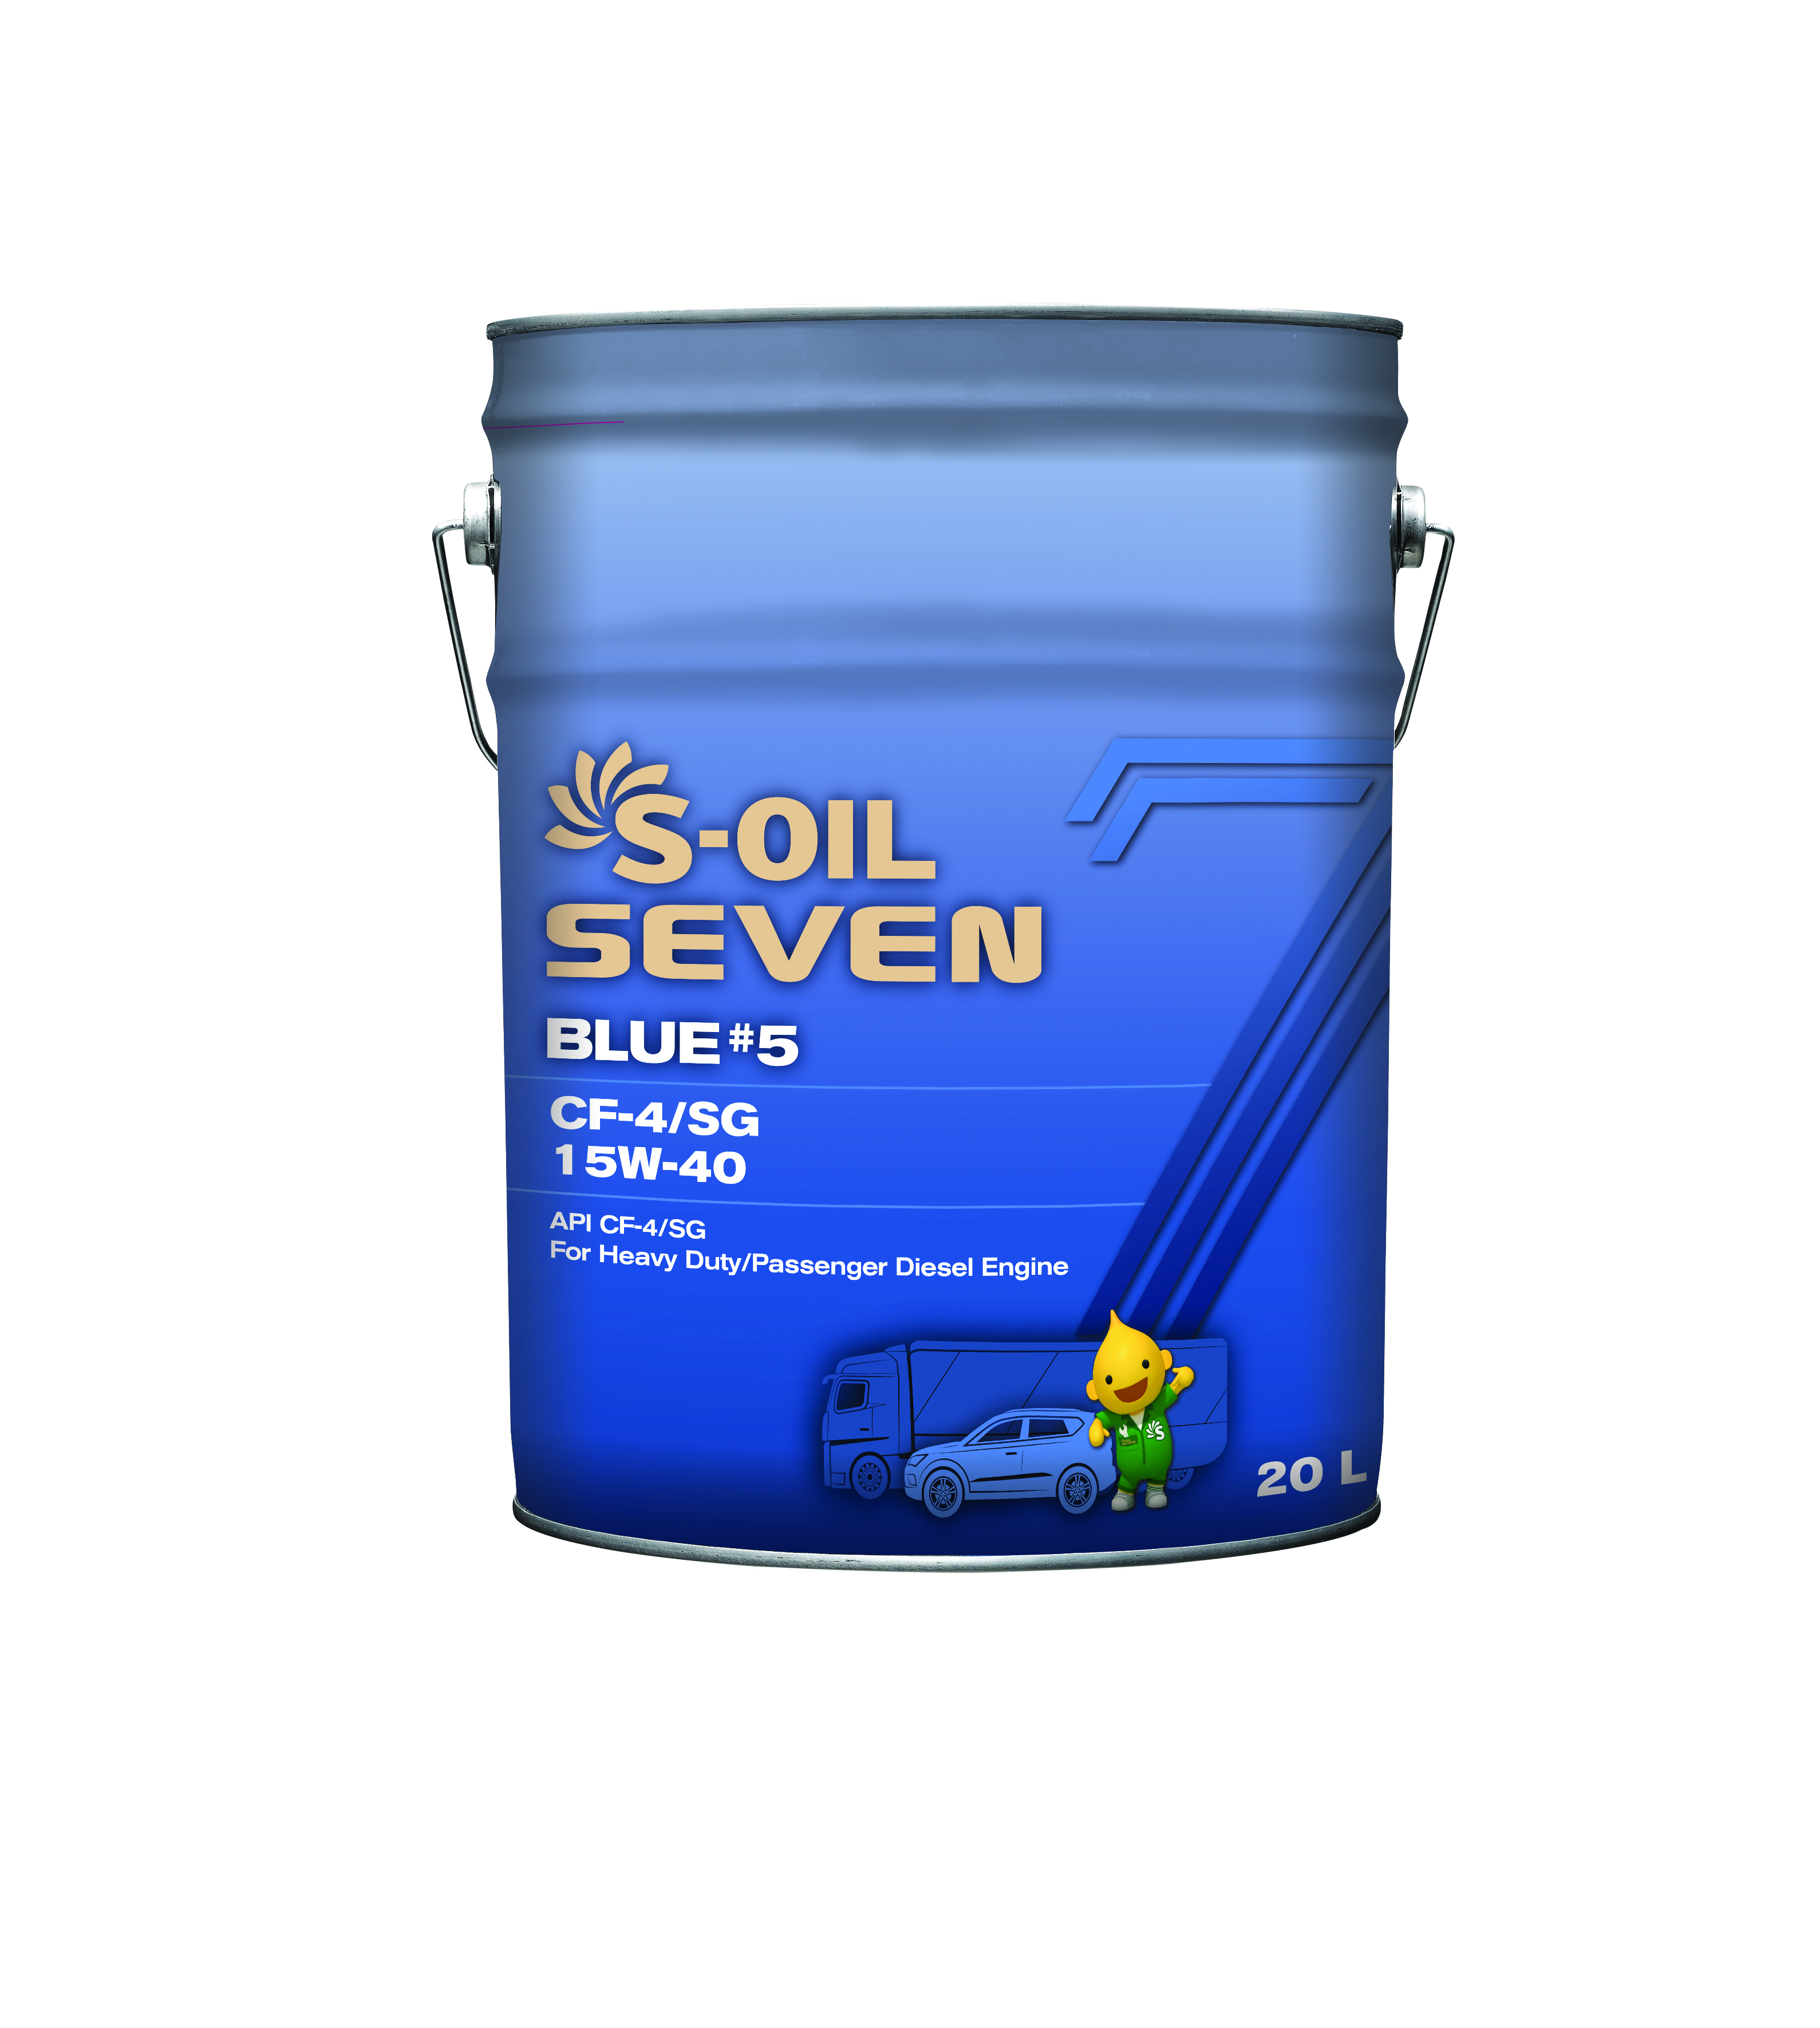 Масло Моторное S-OIL 7 BLUE #5 CF-4/SG 15W40 (20л)